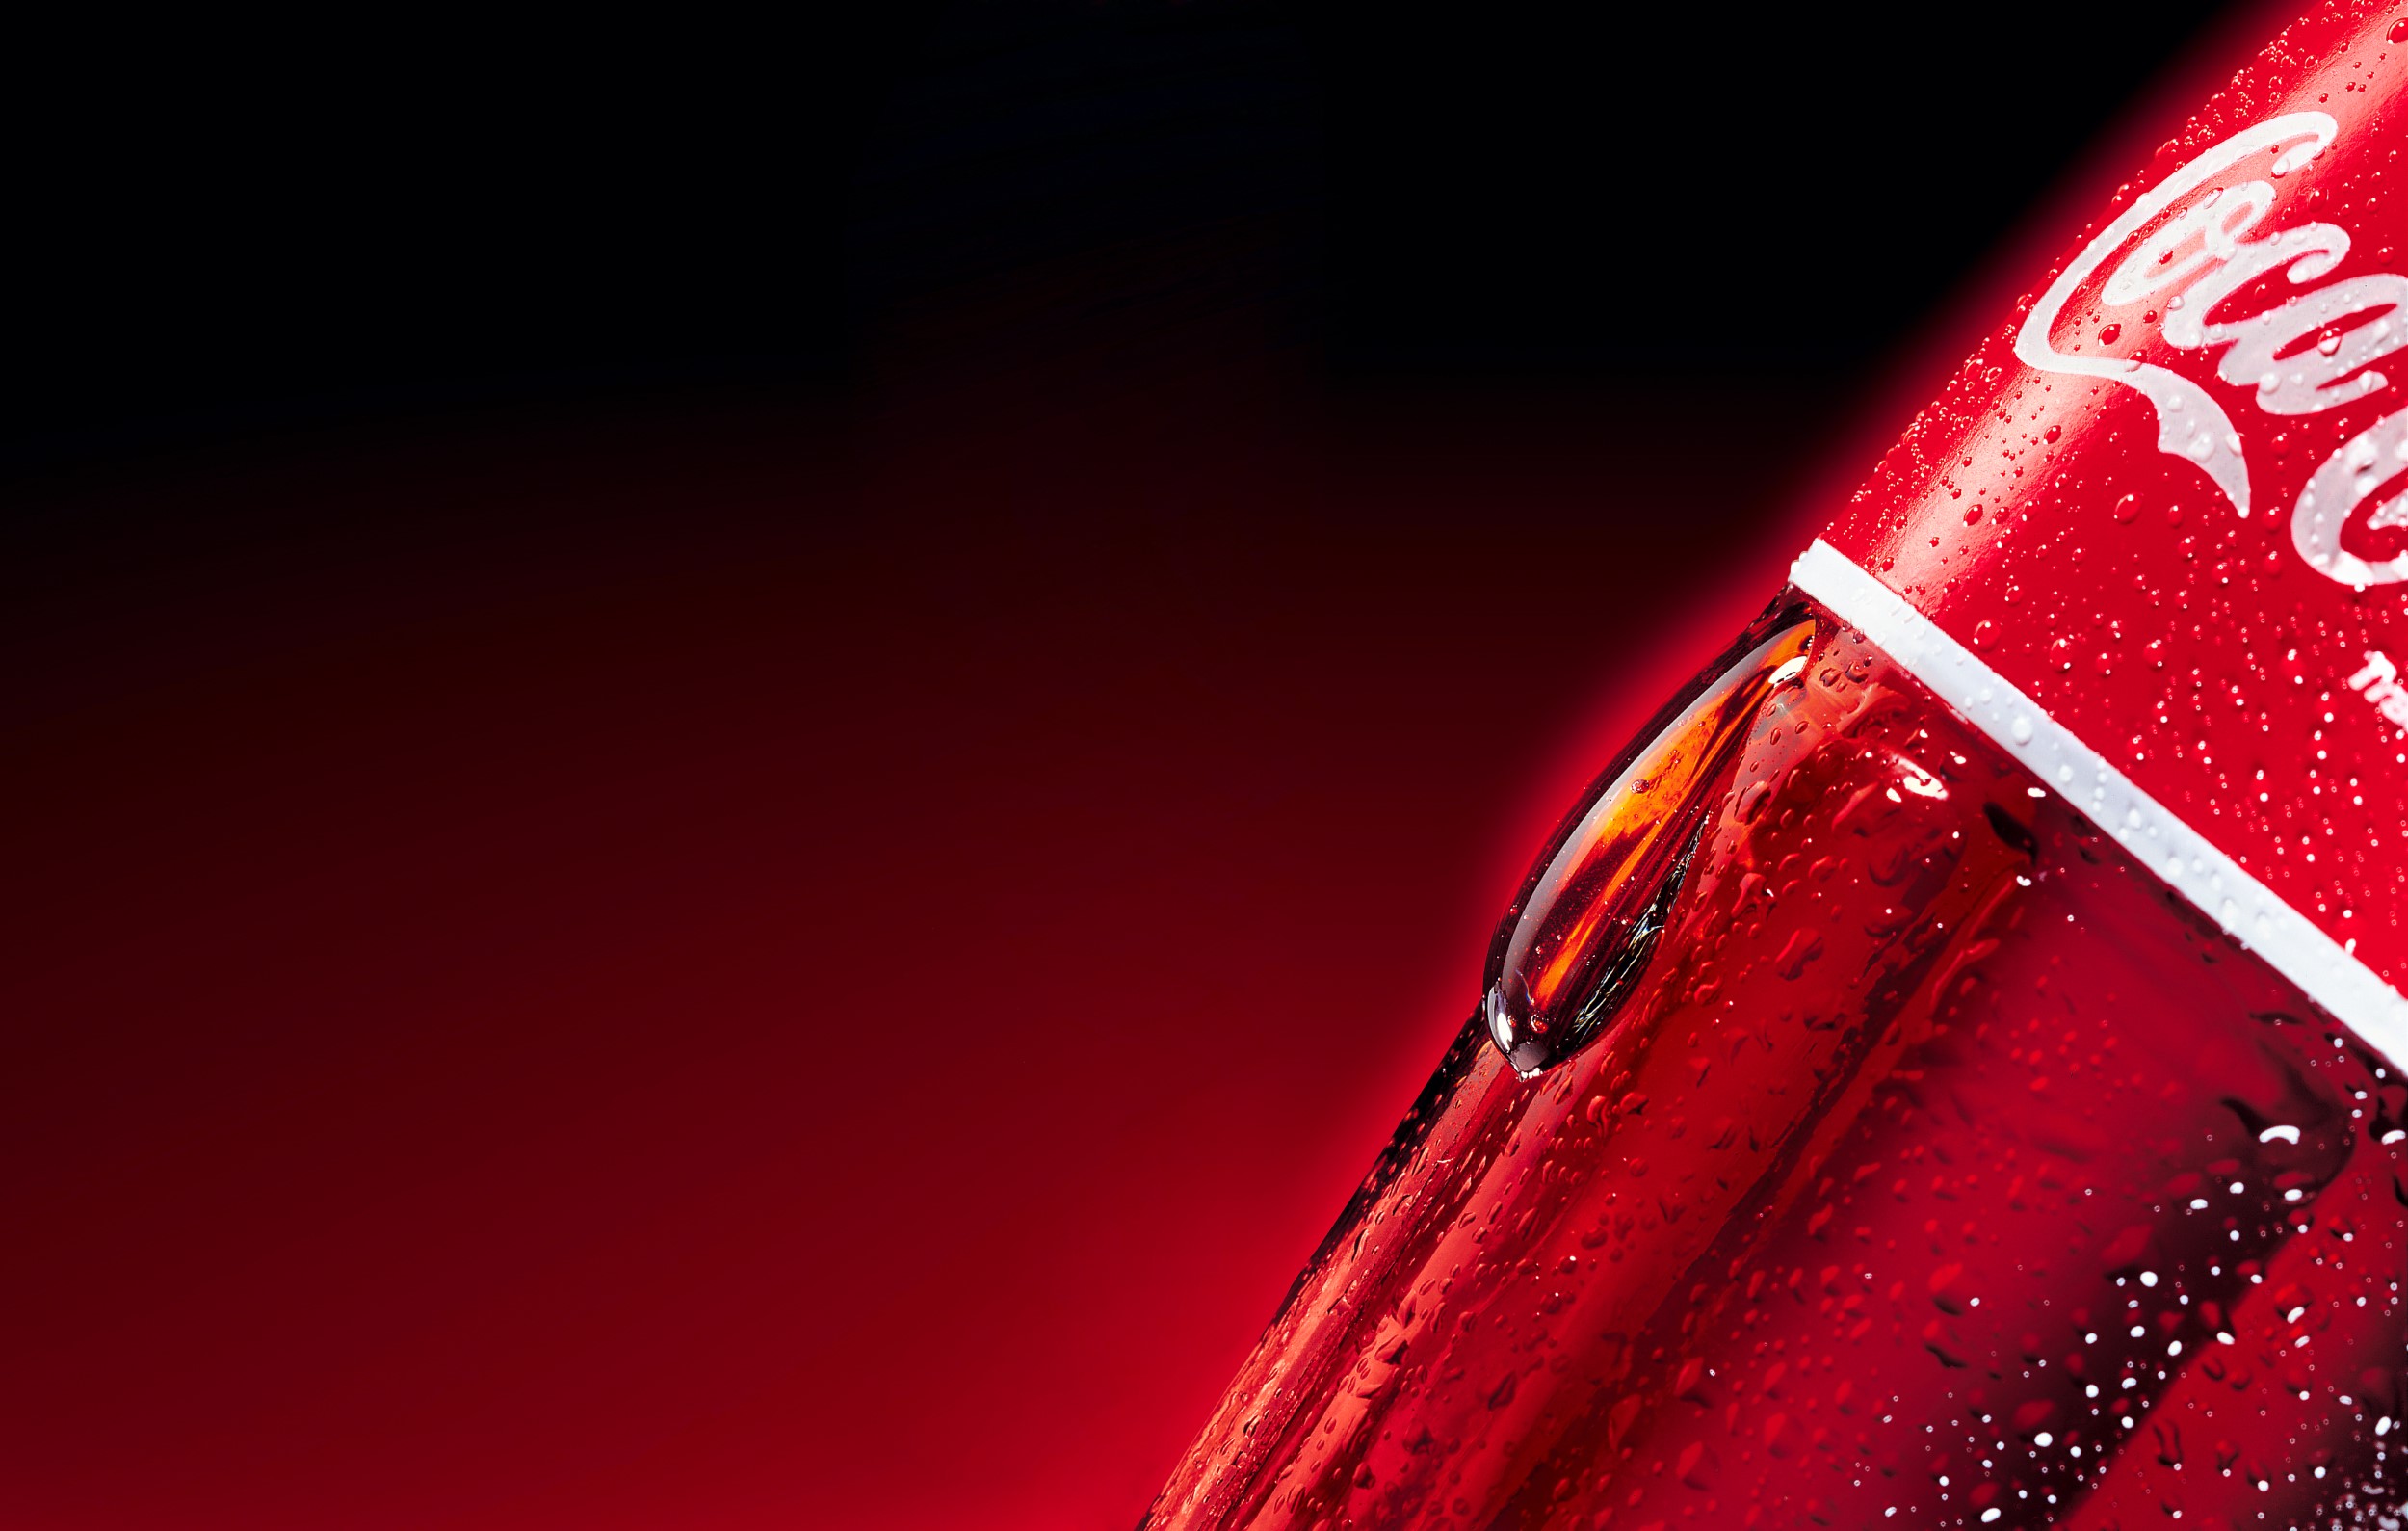 צילום סנסורי של טיפה ענקית בתנוחה טבעית של נזילה על דופן בקבוק זכוכית קוקה קולה למודעה משרד פרסום דחף אחד